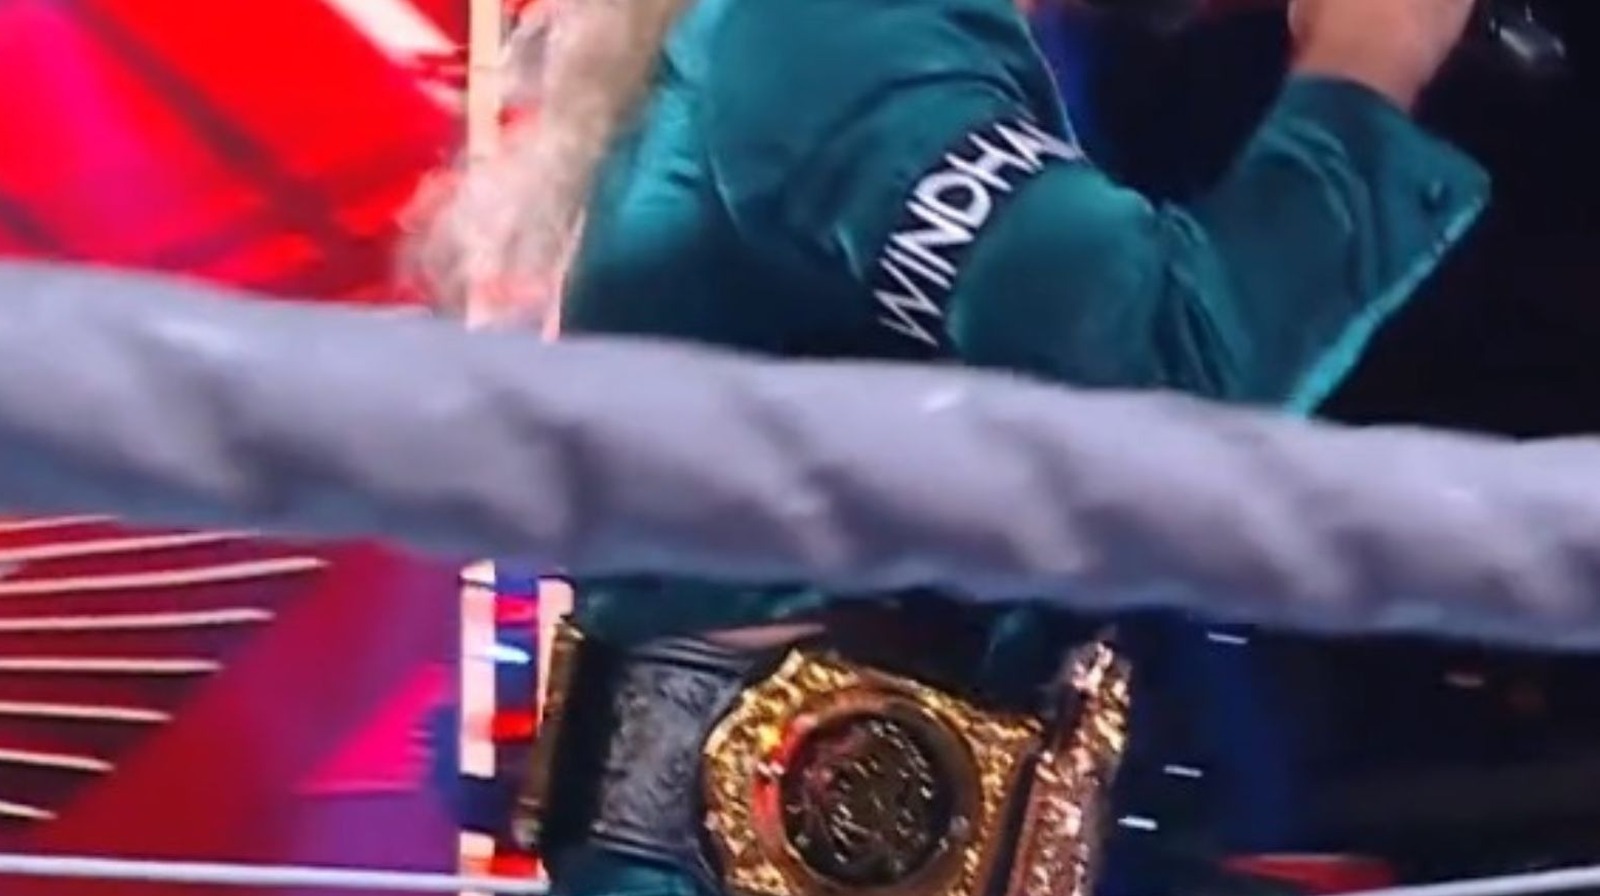 Seth Rollins agrega la placa lateral de Bray Wyatt Fiend Mask al cinturón del título mundial de peso pesado de la WWE